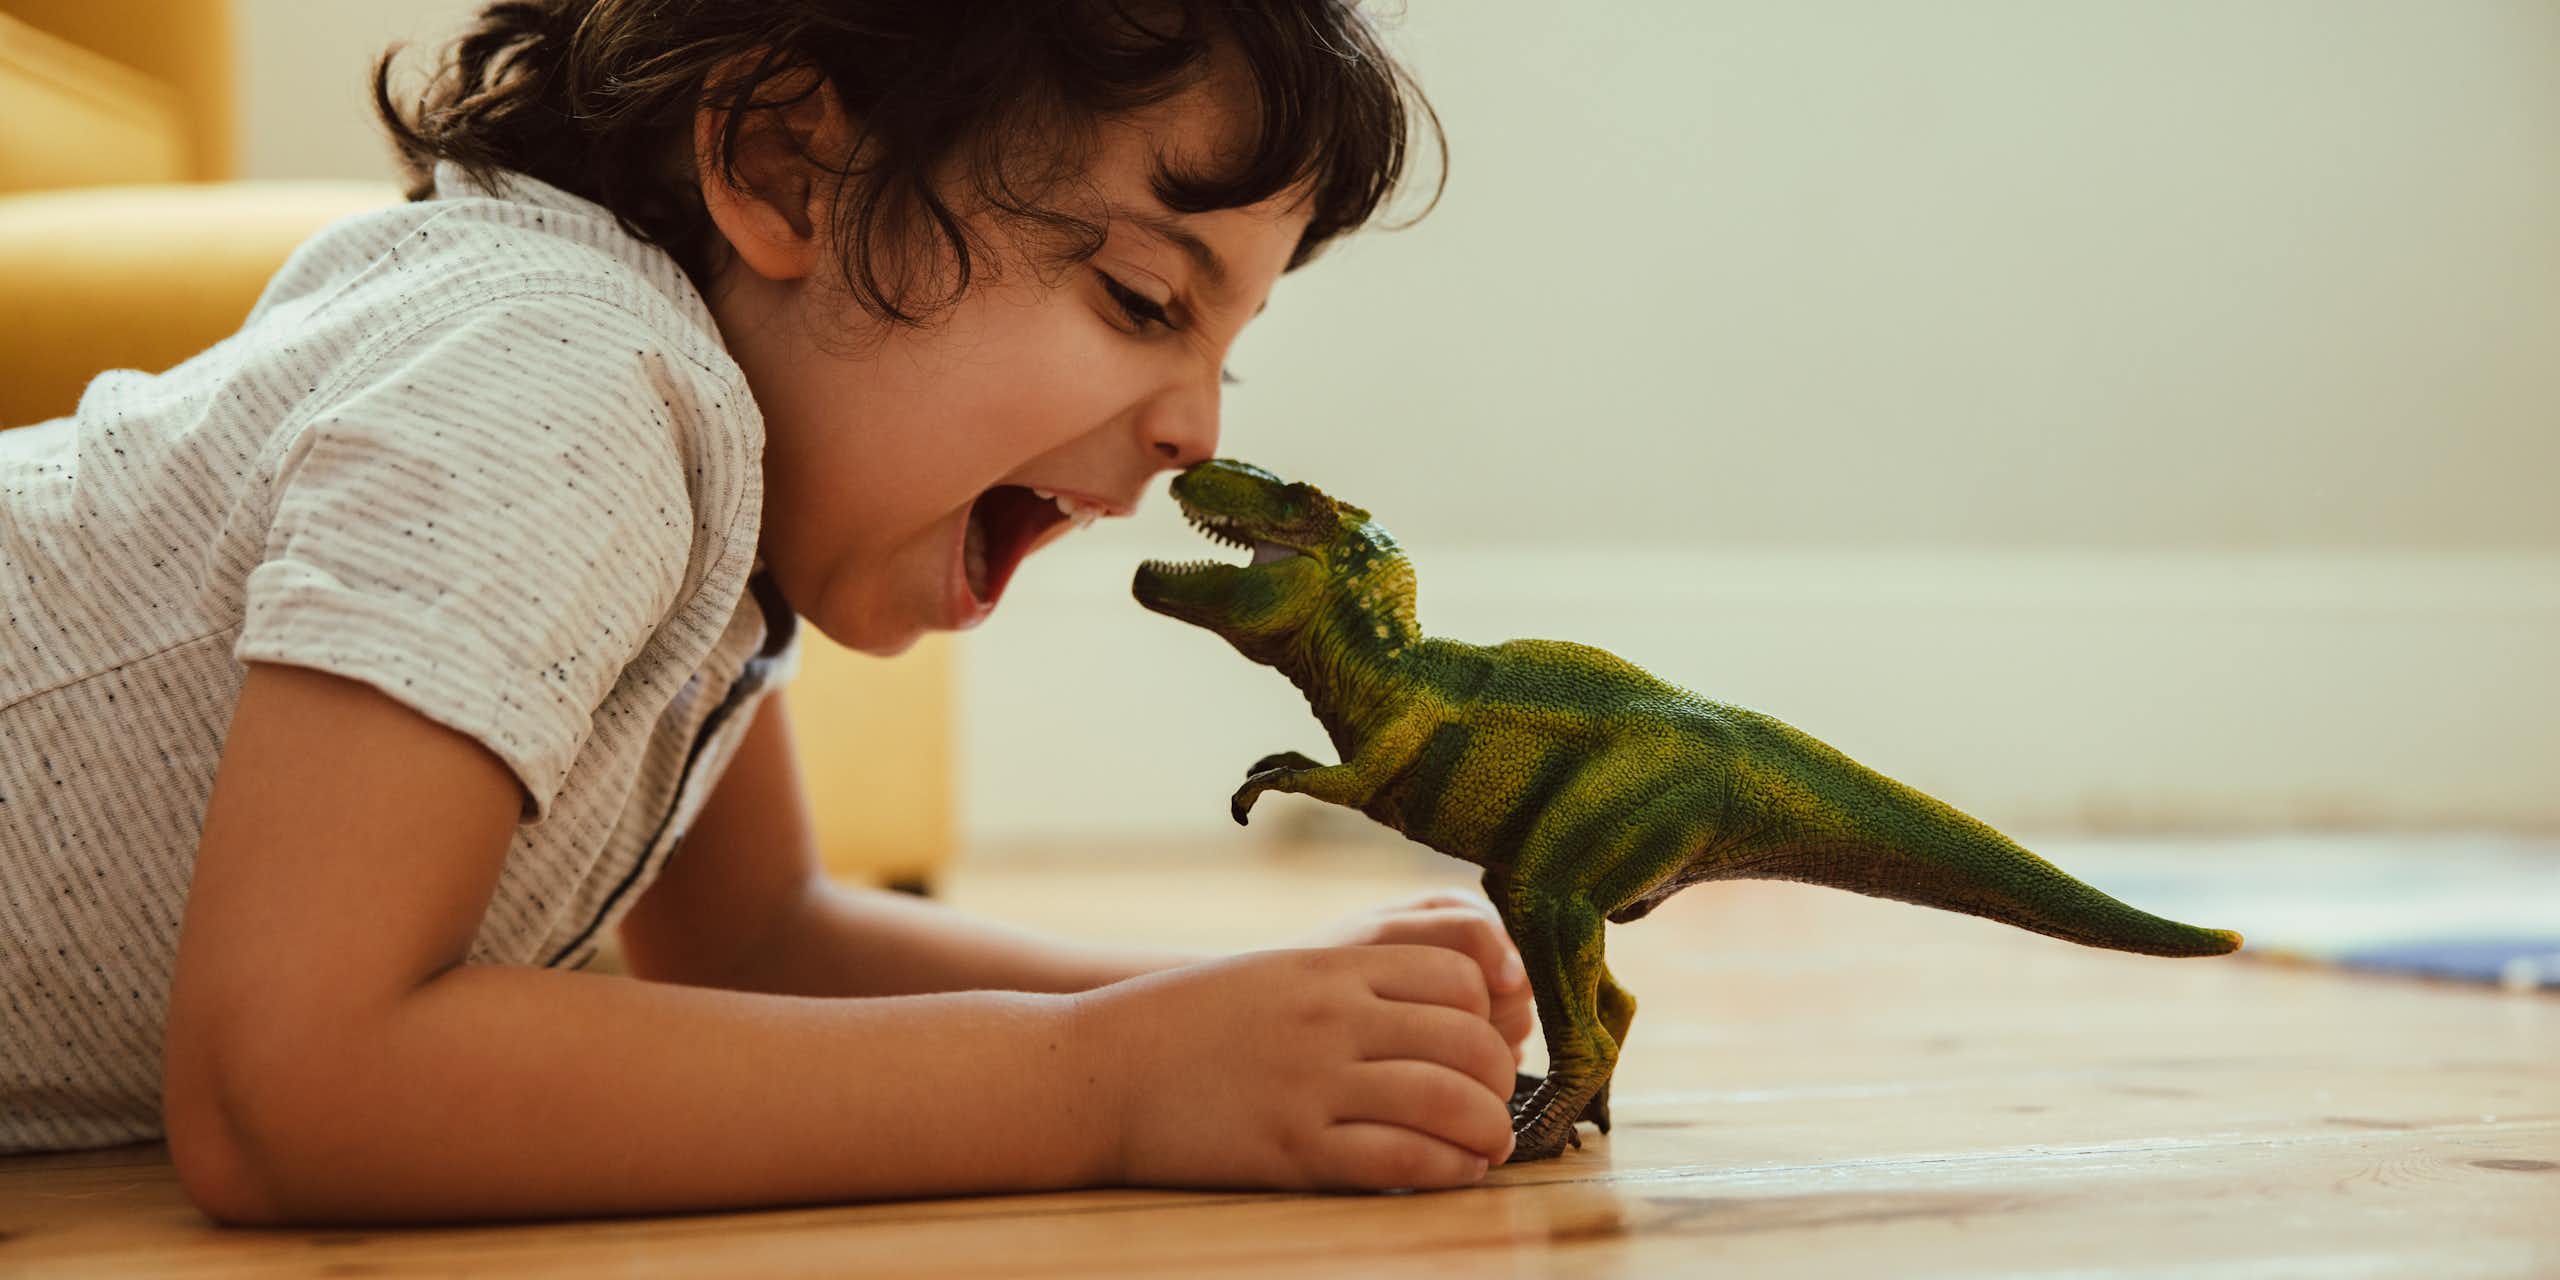 Anak laki-laki bermain dengan mainan T-Rex di lantai